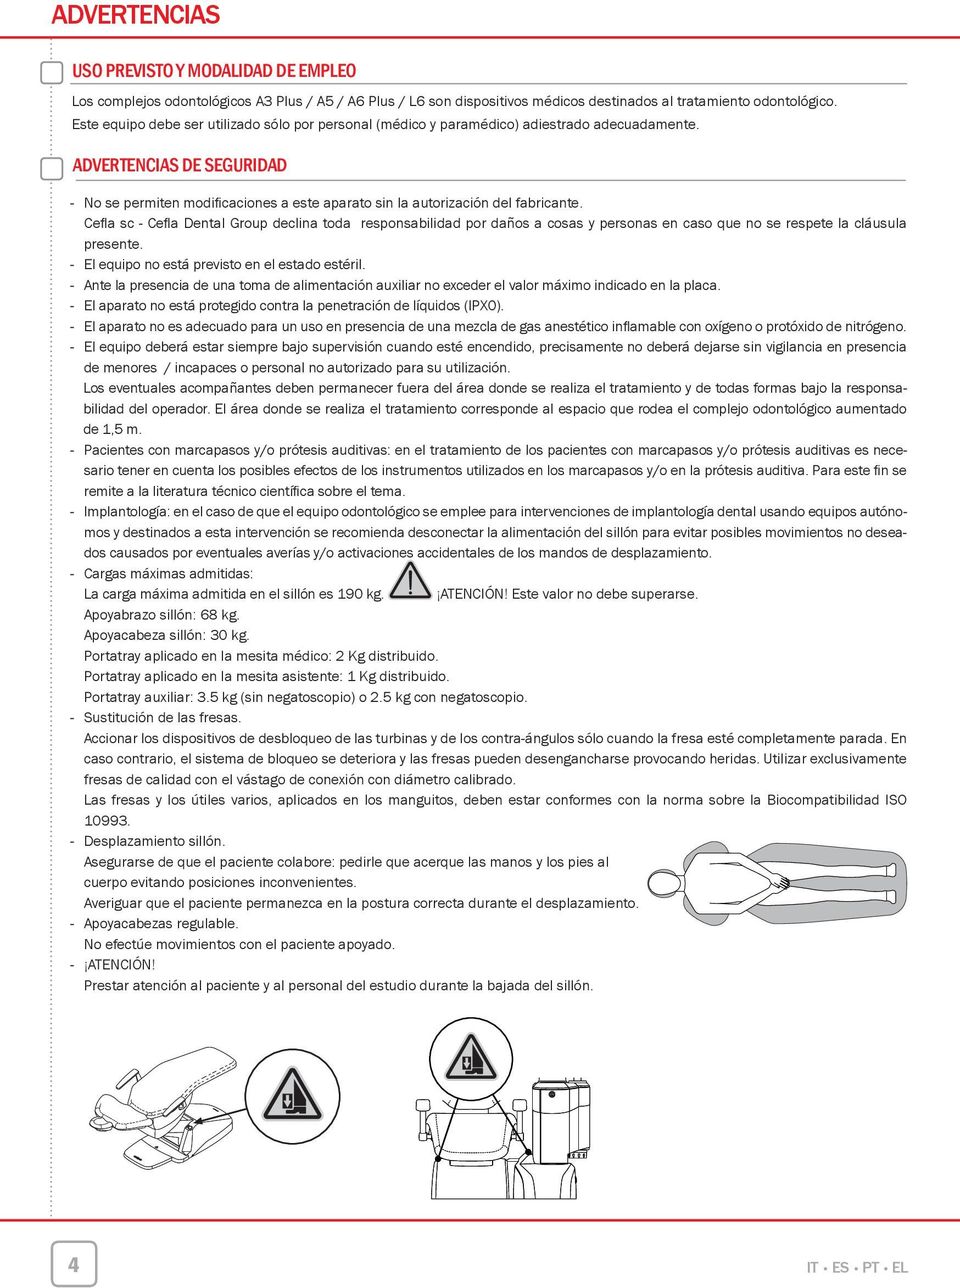 ADVERTENCIAS DE SEGURIDAD - No se permiten modificaciones a este aparato sin la autorización del fabricante.